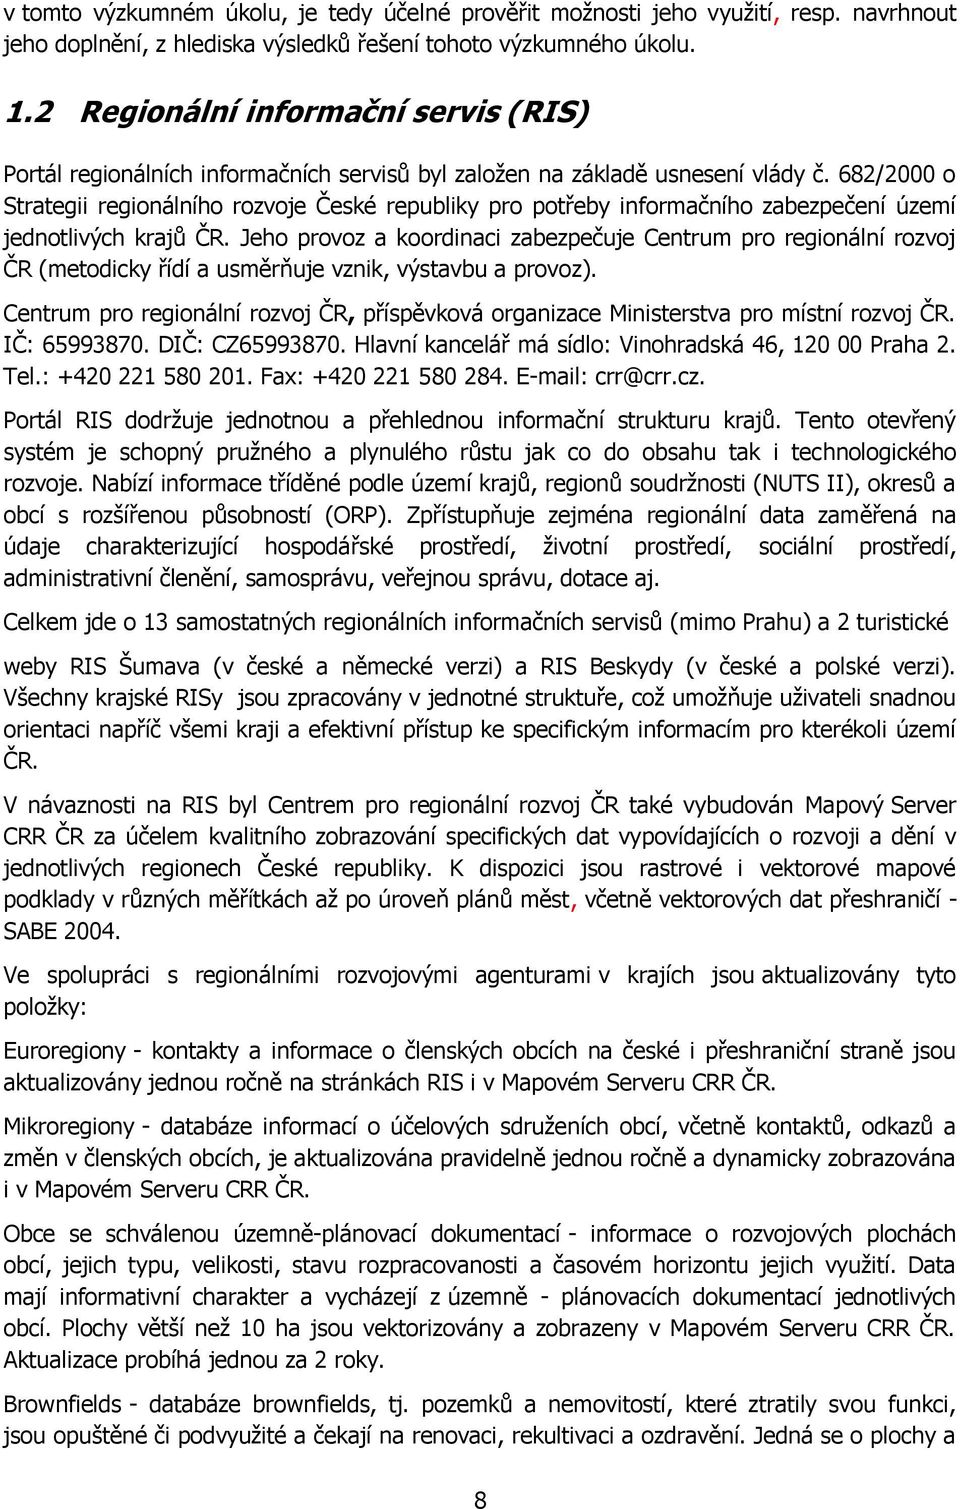 682/2000 o Strategii regionálního rozvoje České republiky pro potřeby informačního zabezpečení území jednotlivých krajů ČR.